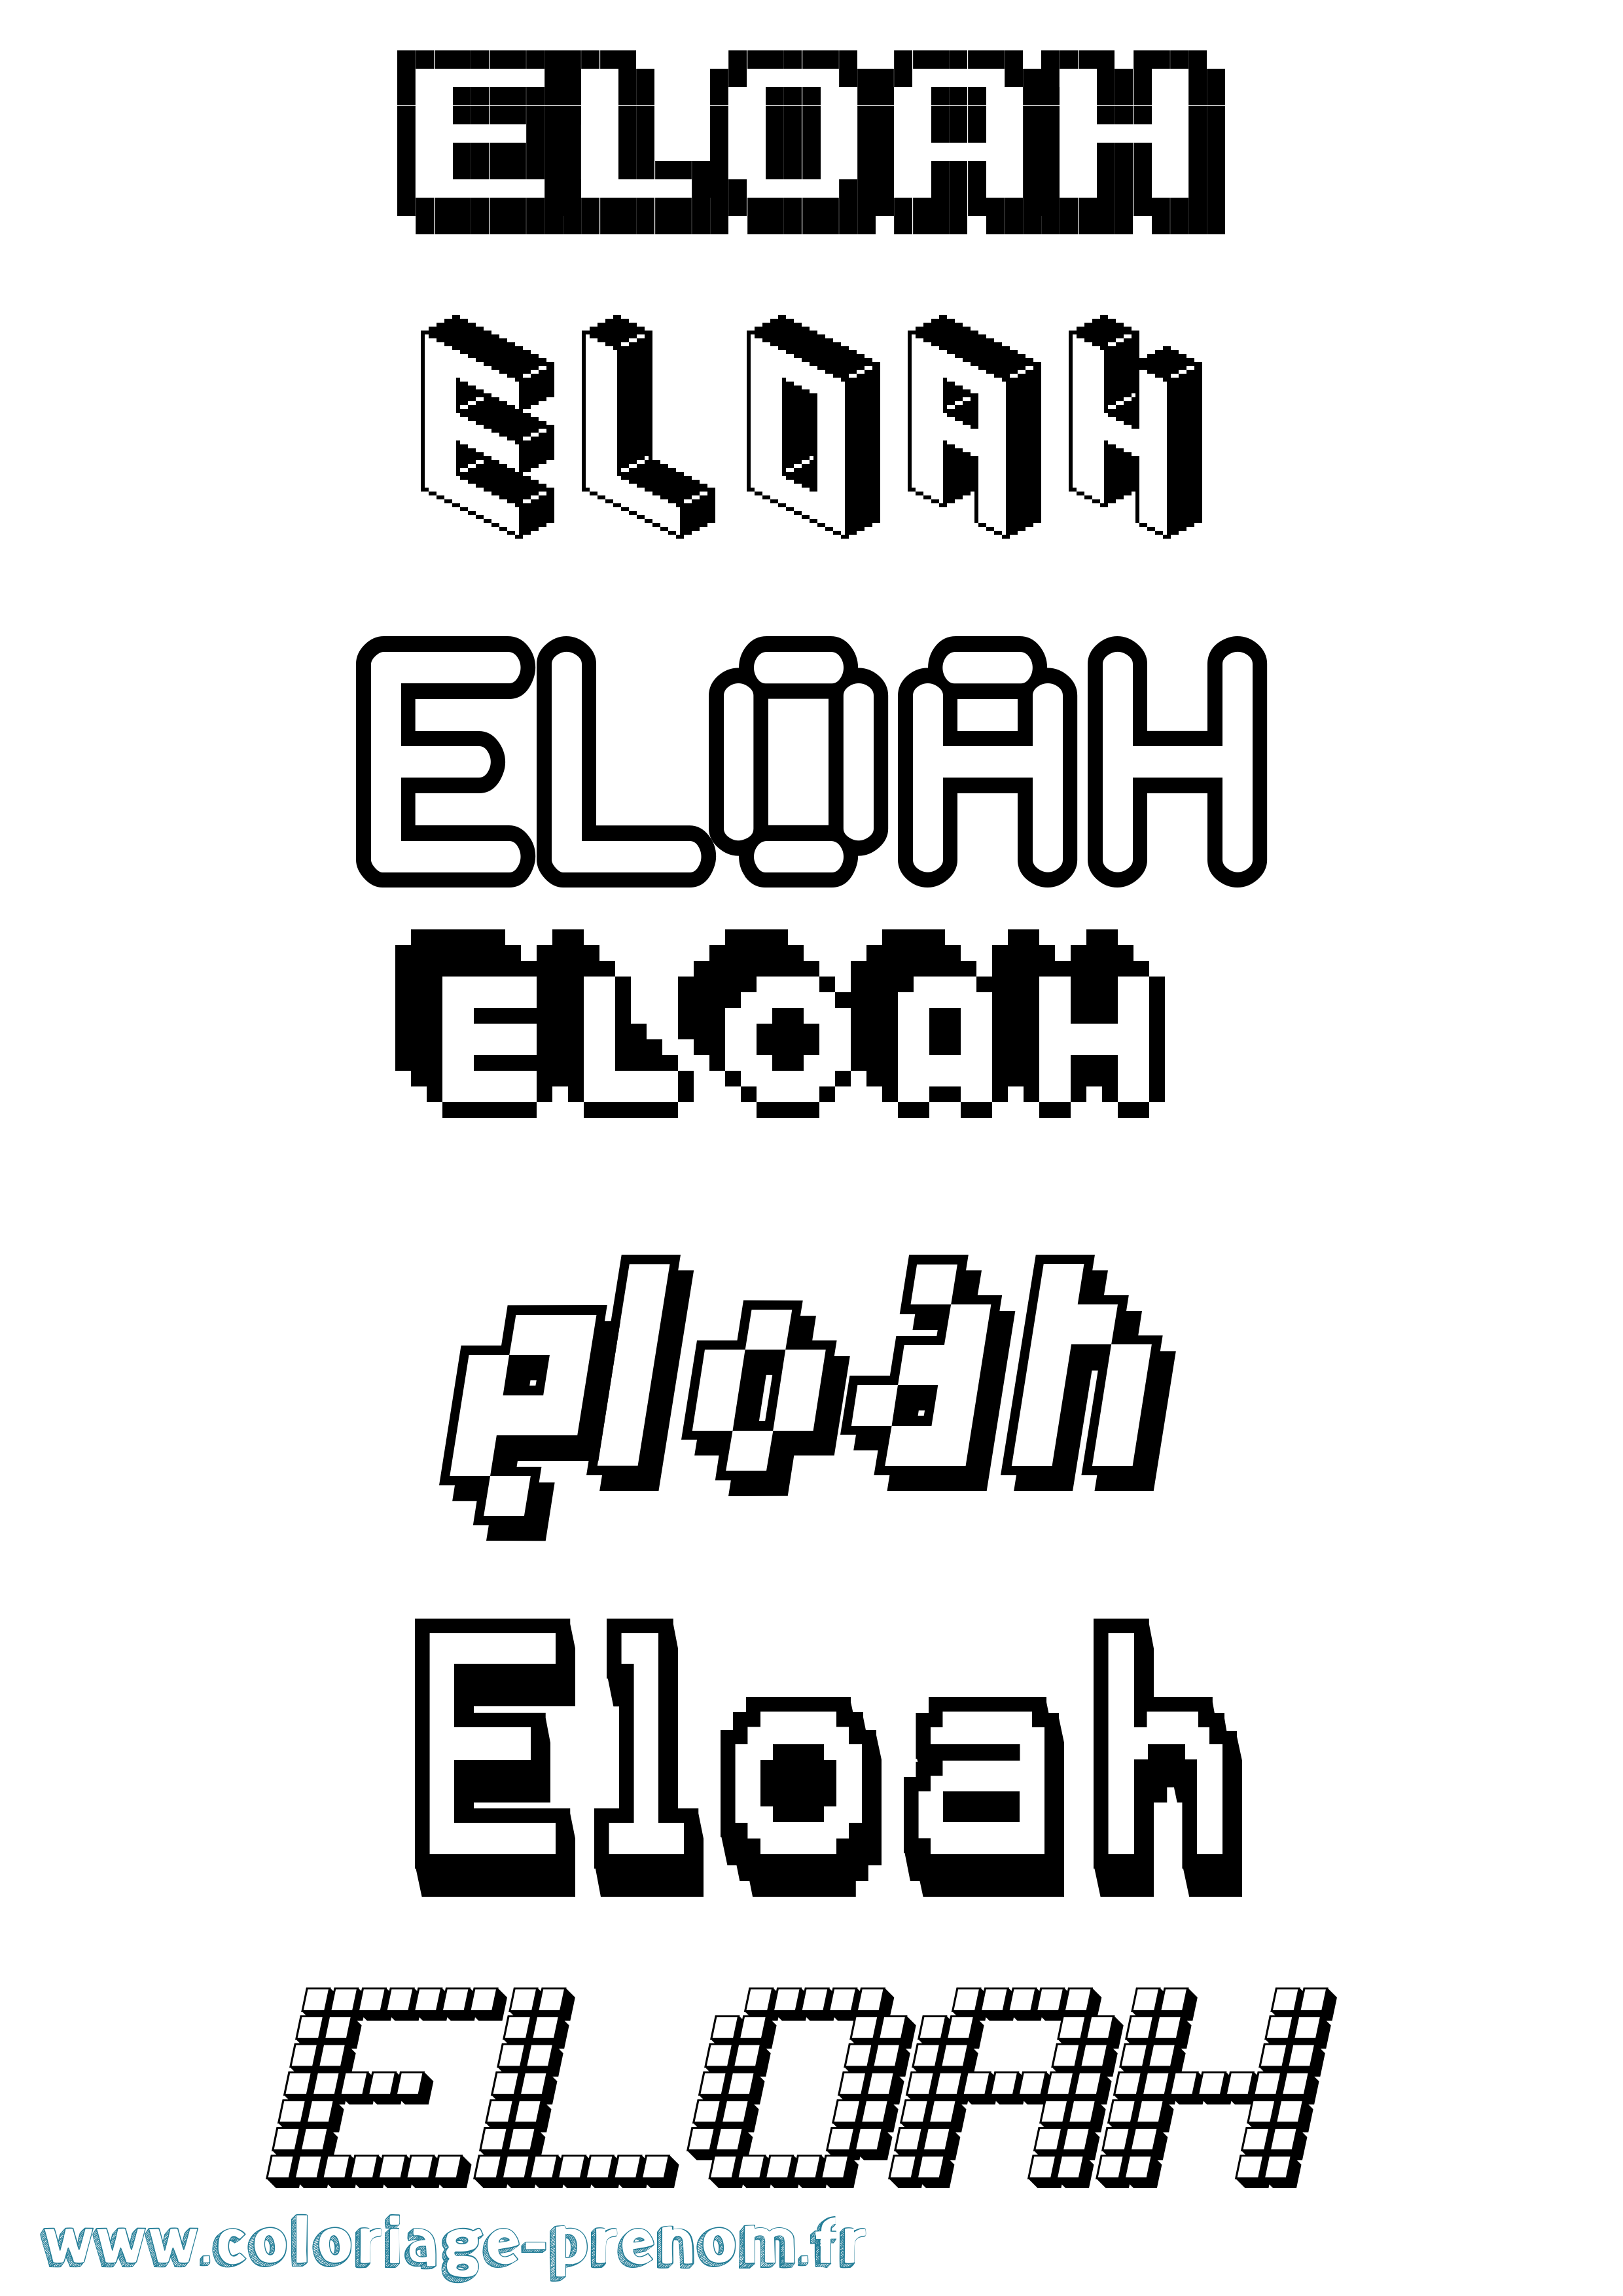 Coloriage prénom Eloah Pixel